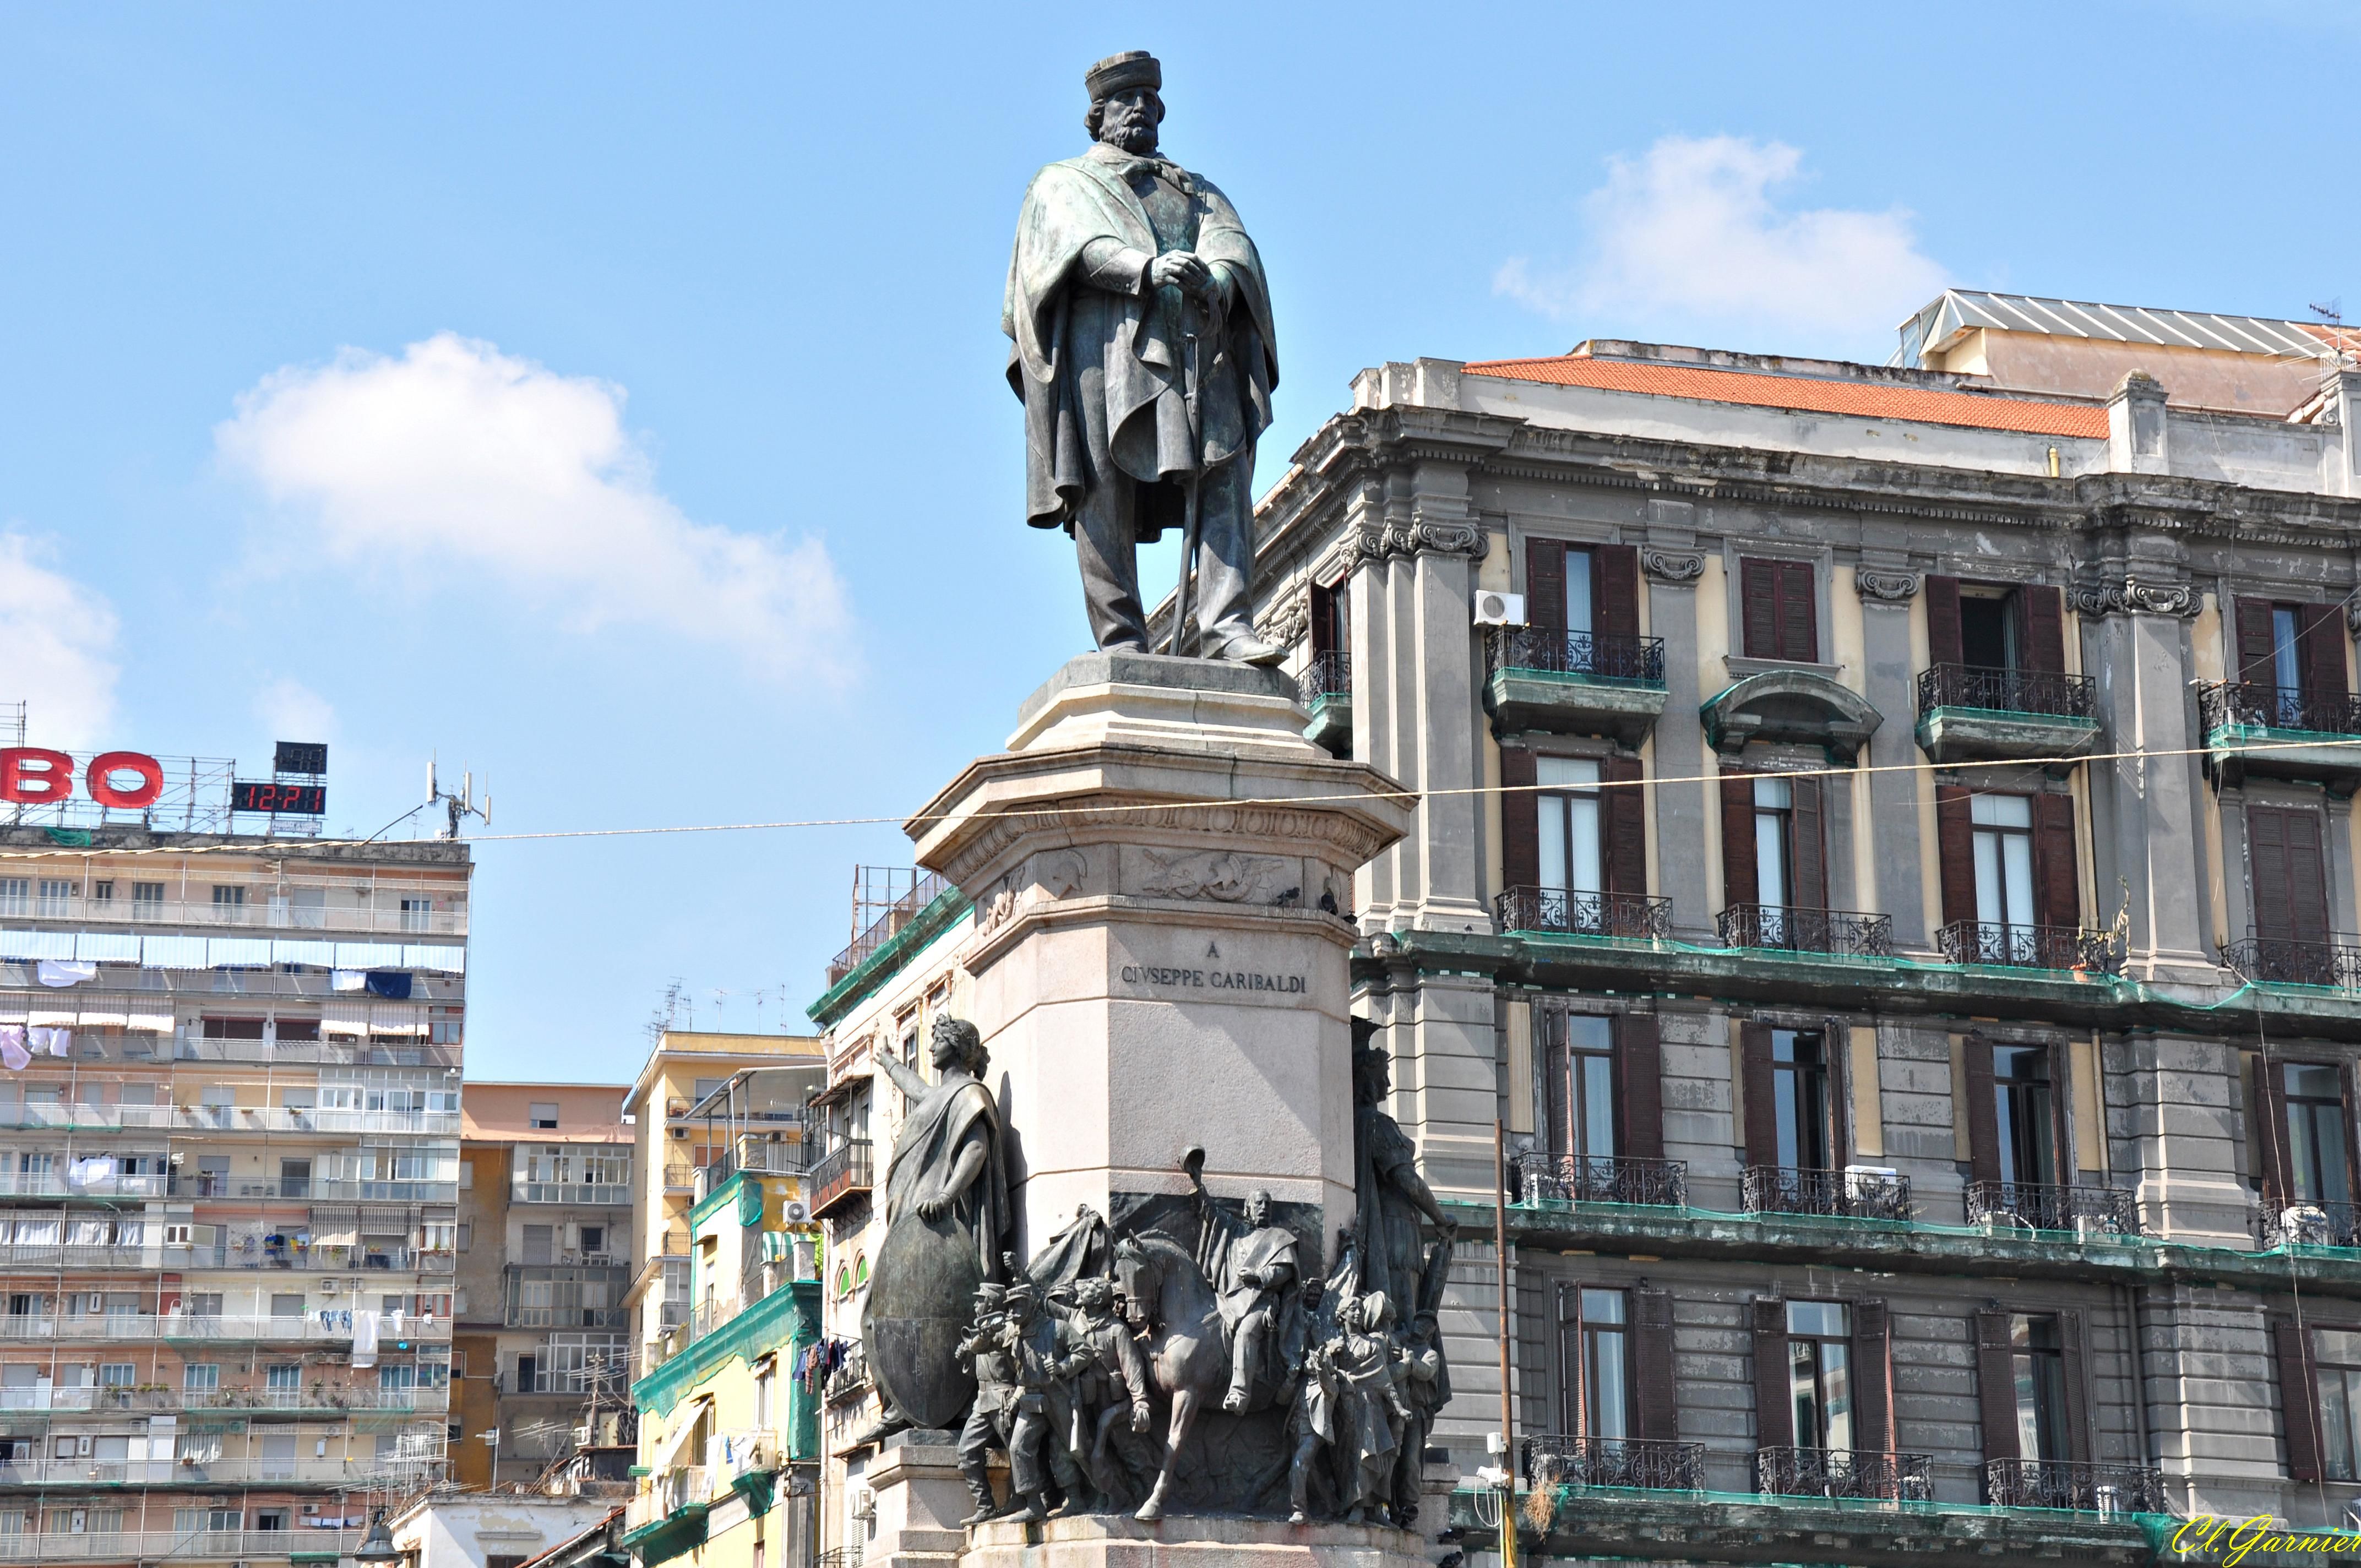 Piazza G.Garibaldi